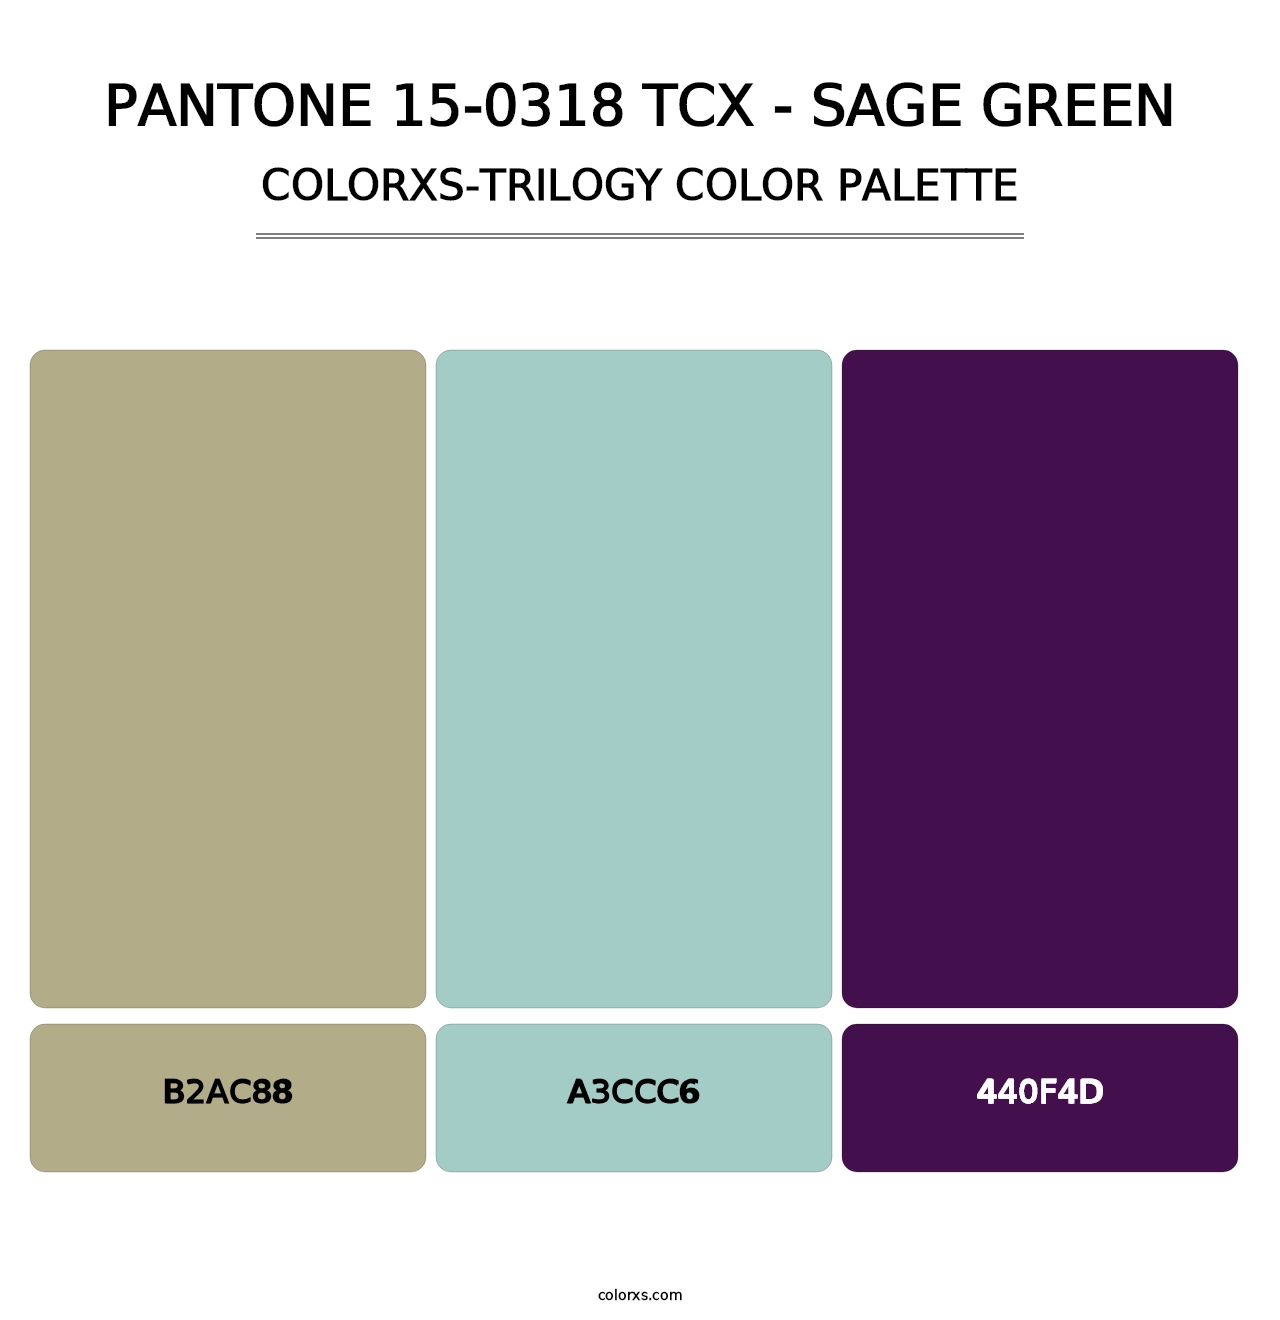 PANTONE 15-0318 TCX - Sage Green - Colorxs Trilogy Palette